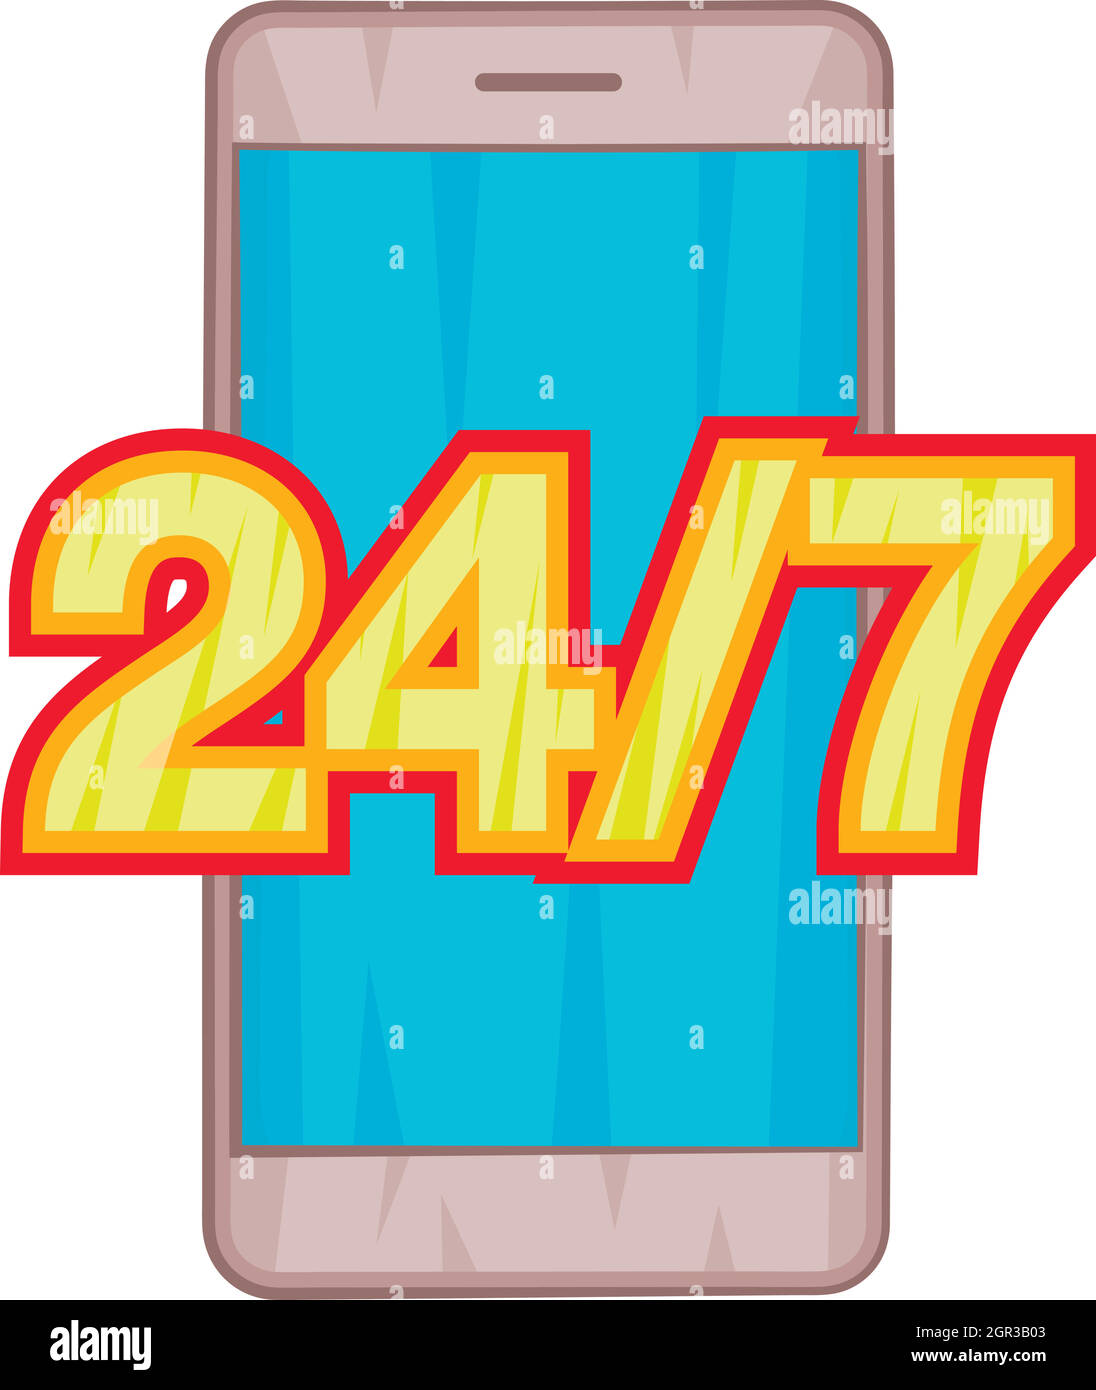 24 7 assistenza telefonica icona, stile cartoon Illustrazione Vettoriale